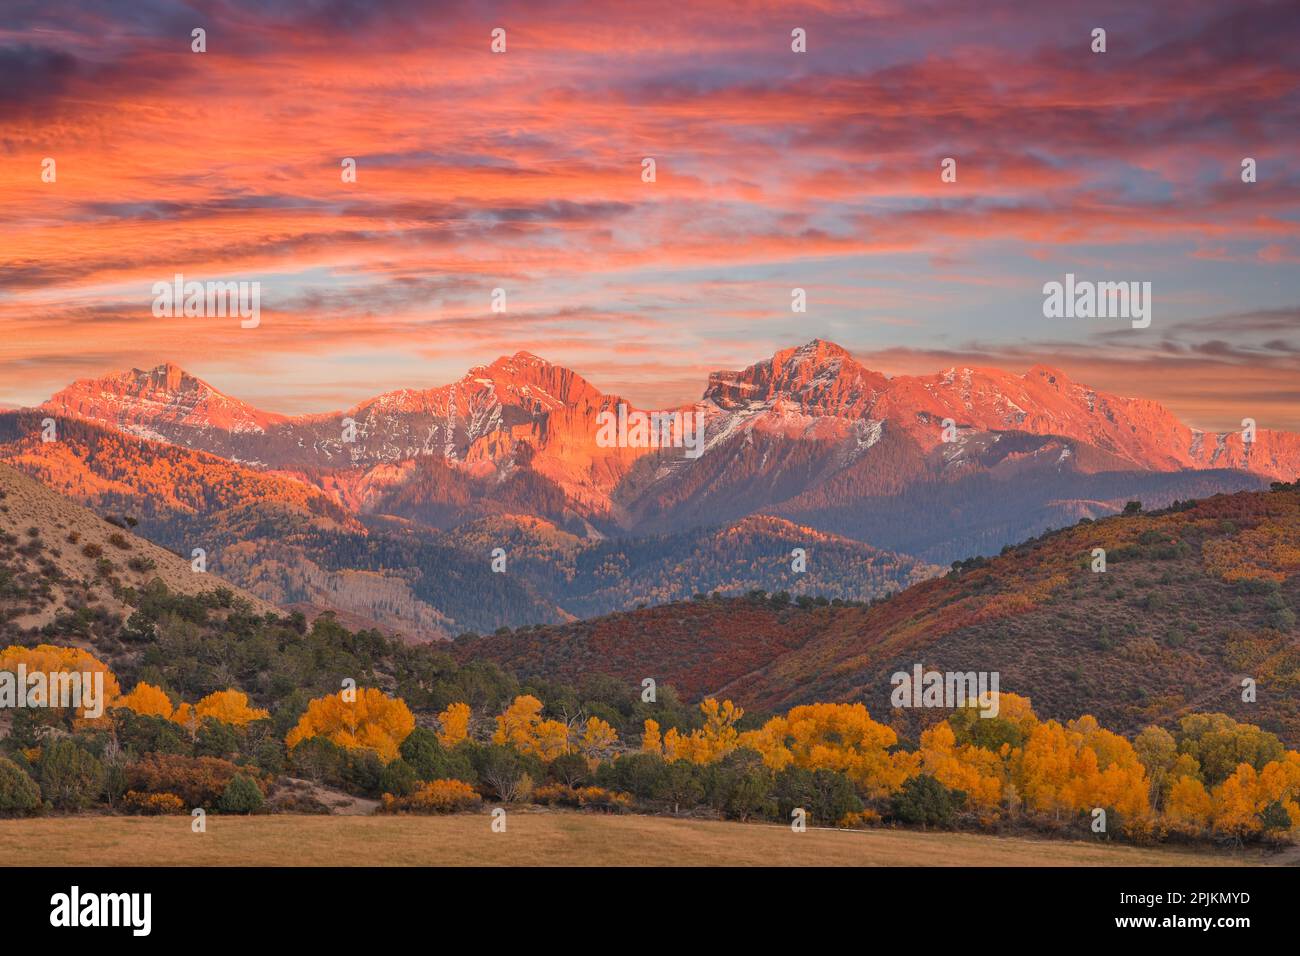 USA, Colorado, Ridgway. Sunset and Dallas Mountain Range autumn Stock Photo